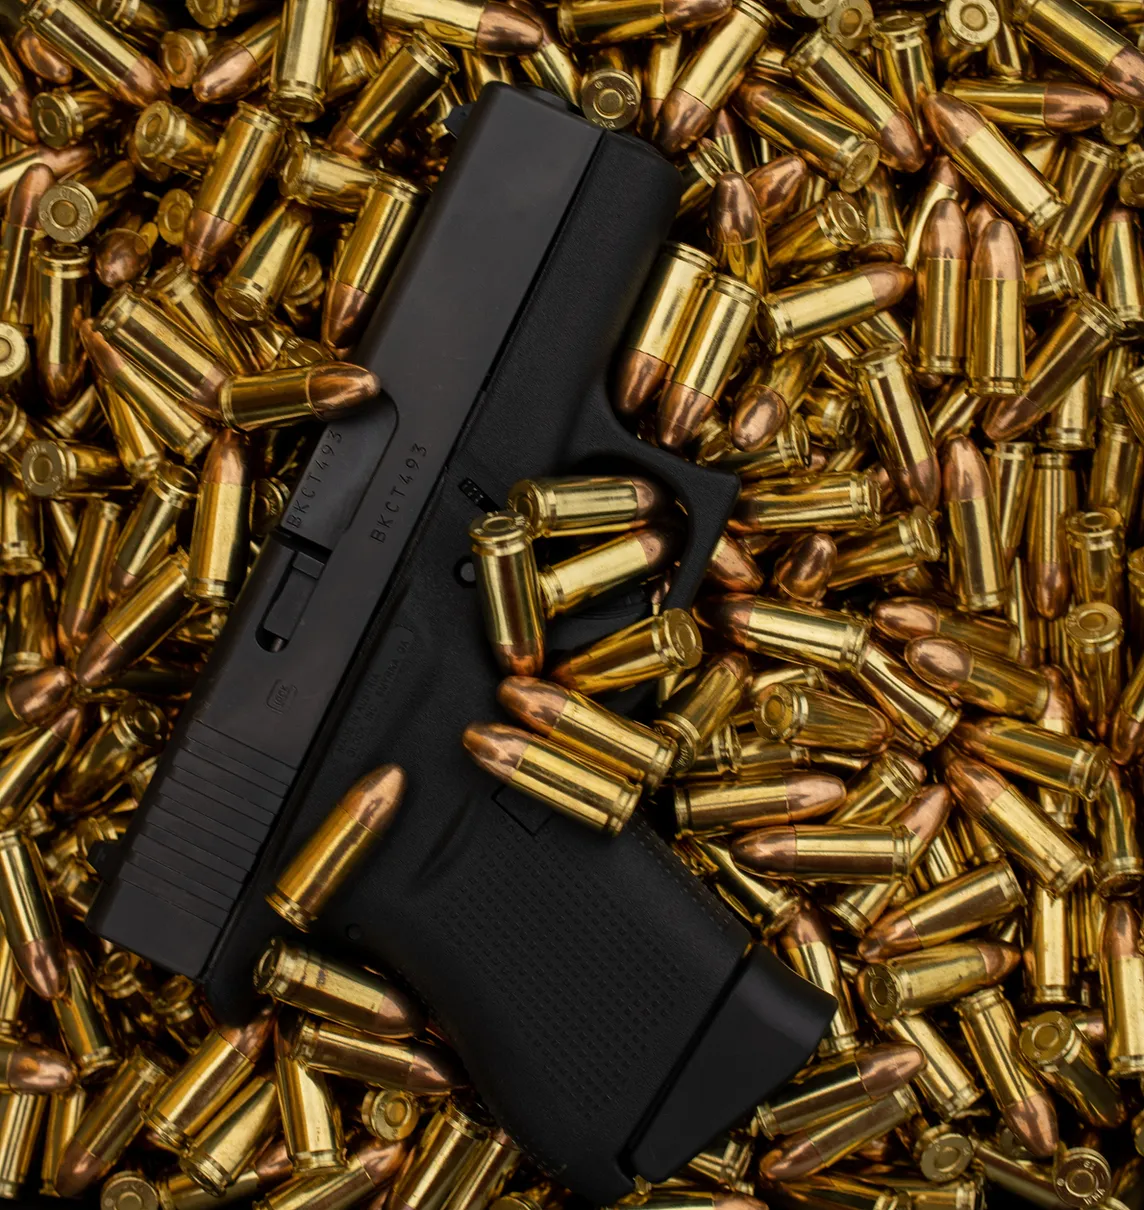 A handgun lies haphazardly amidst an ocean of brass bullets